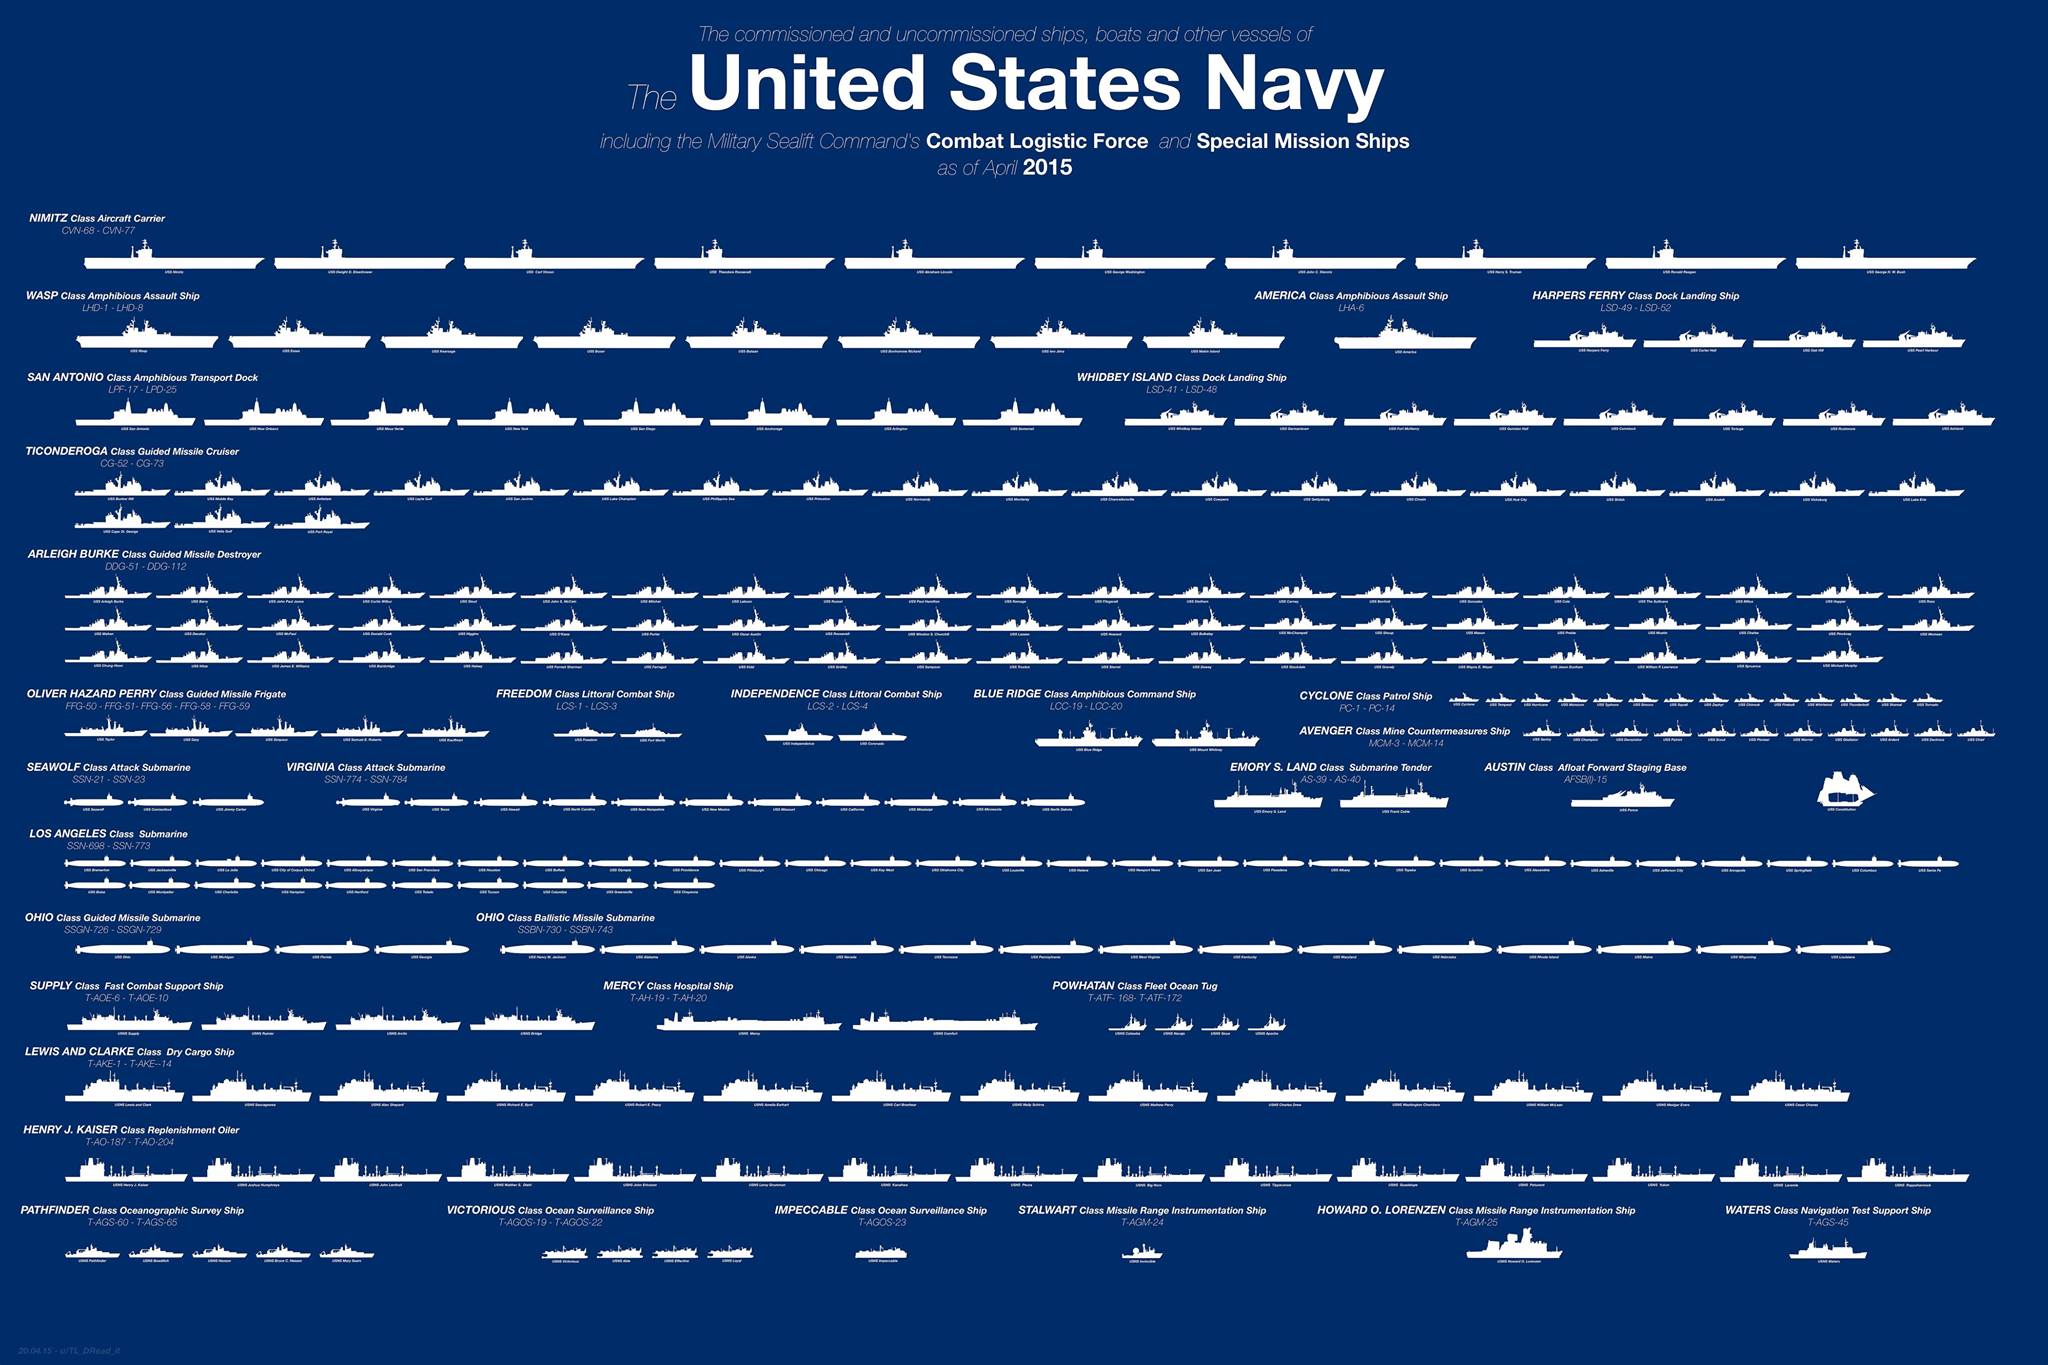 US Navy Fleet overview